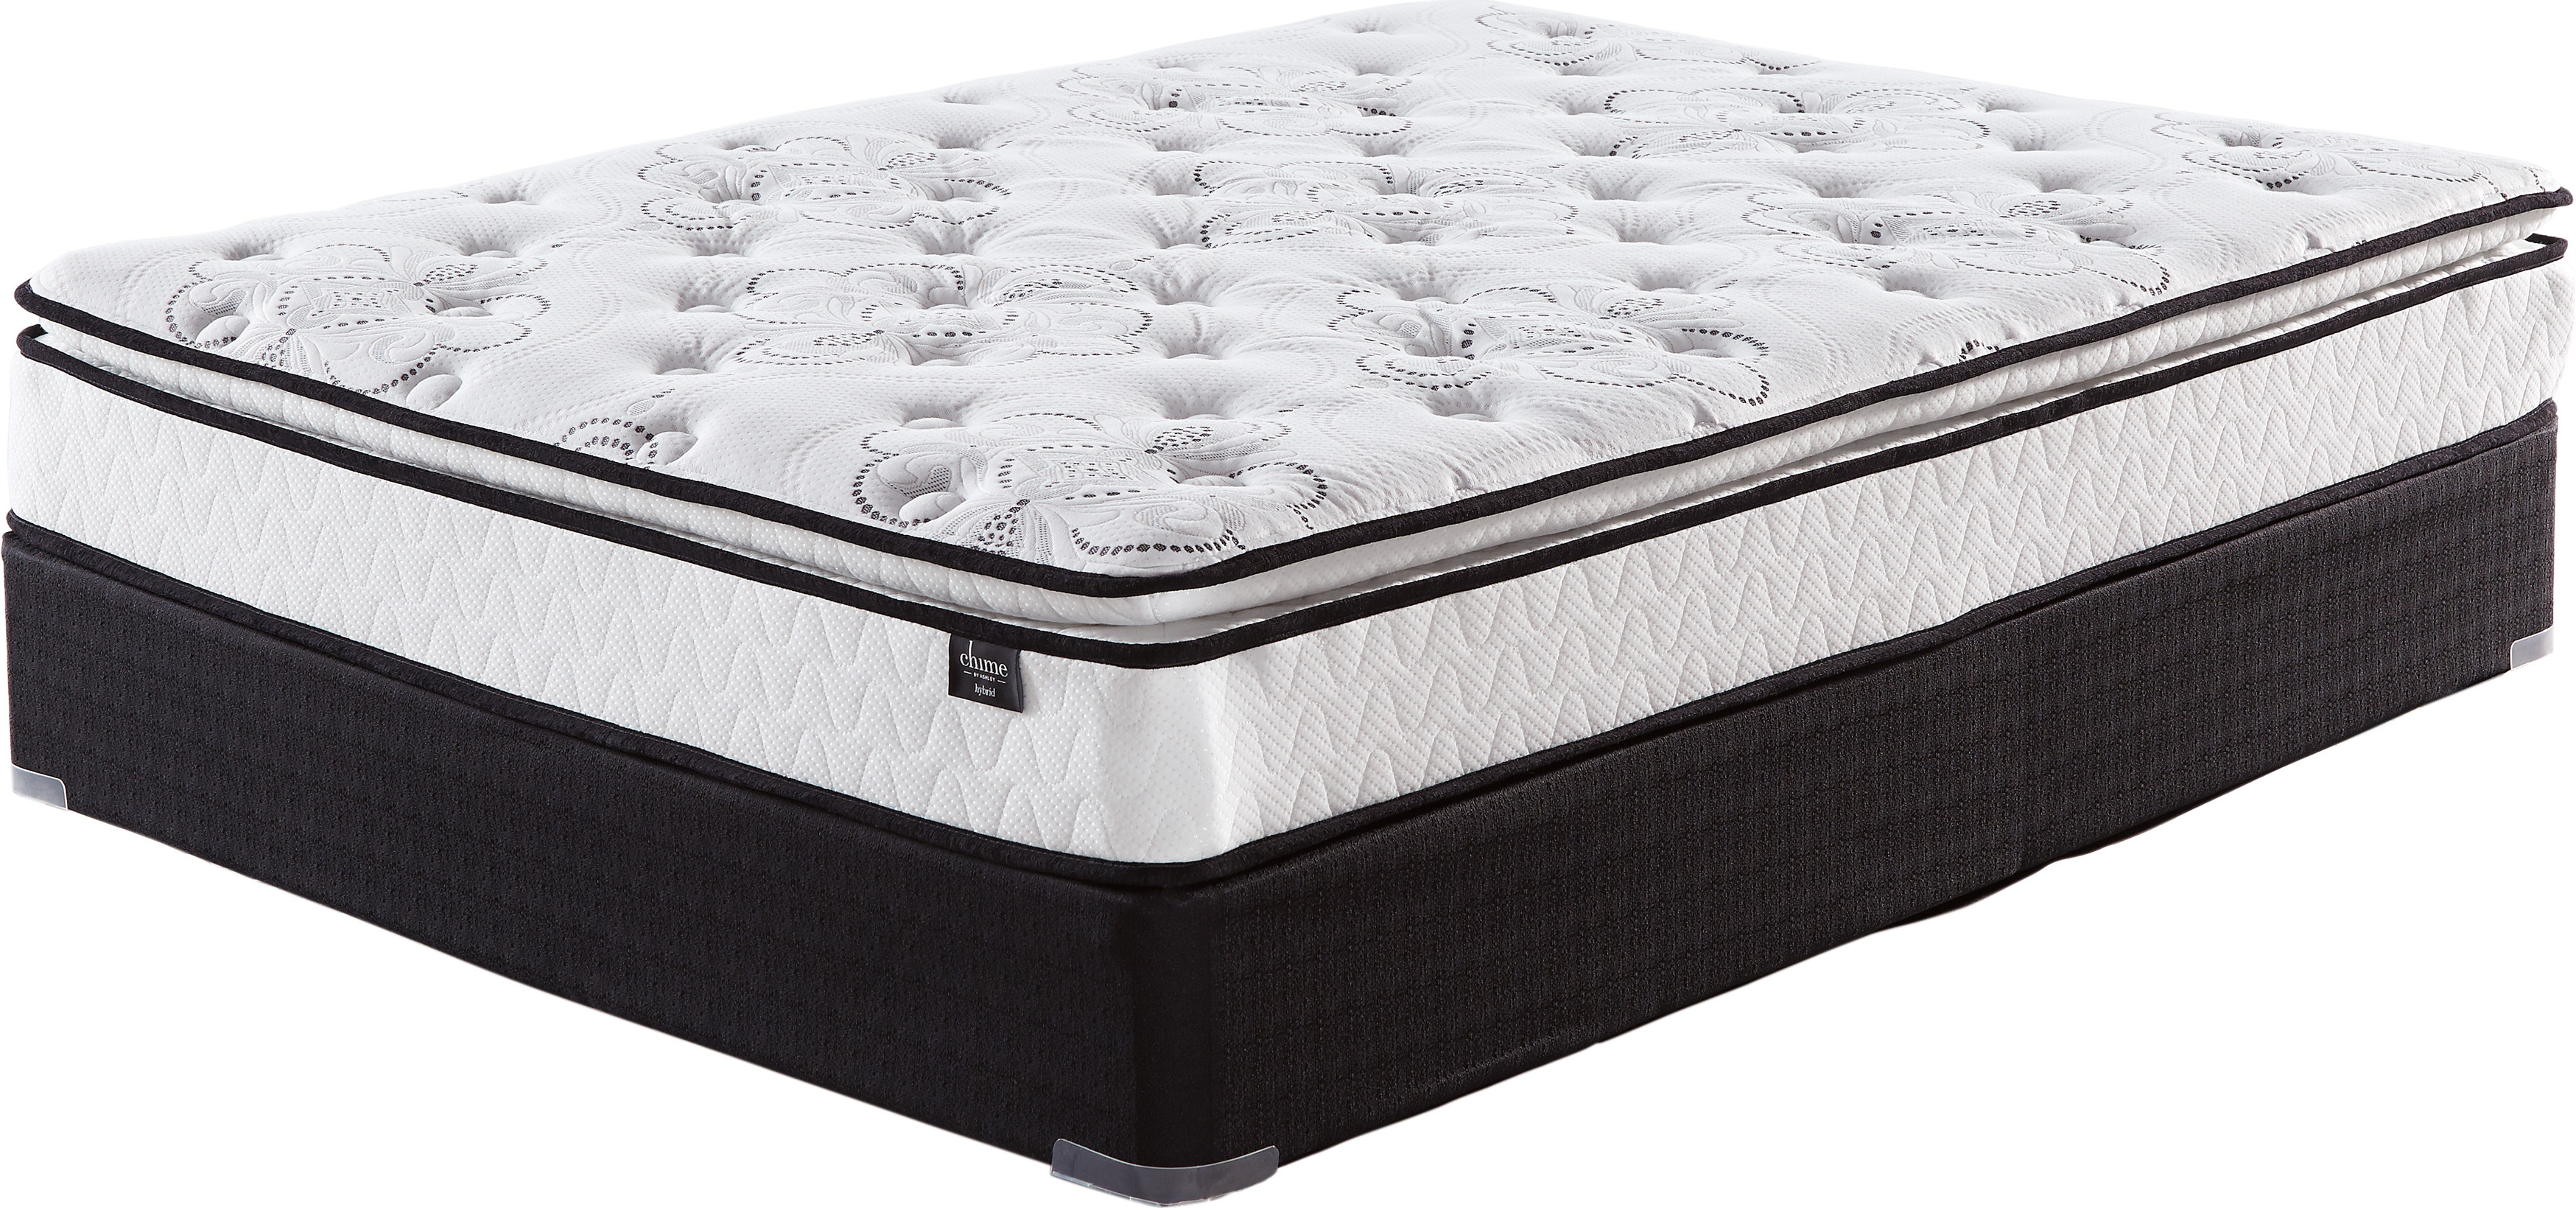 10 inch bonnell pt queen mattress reviews